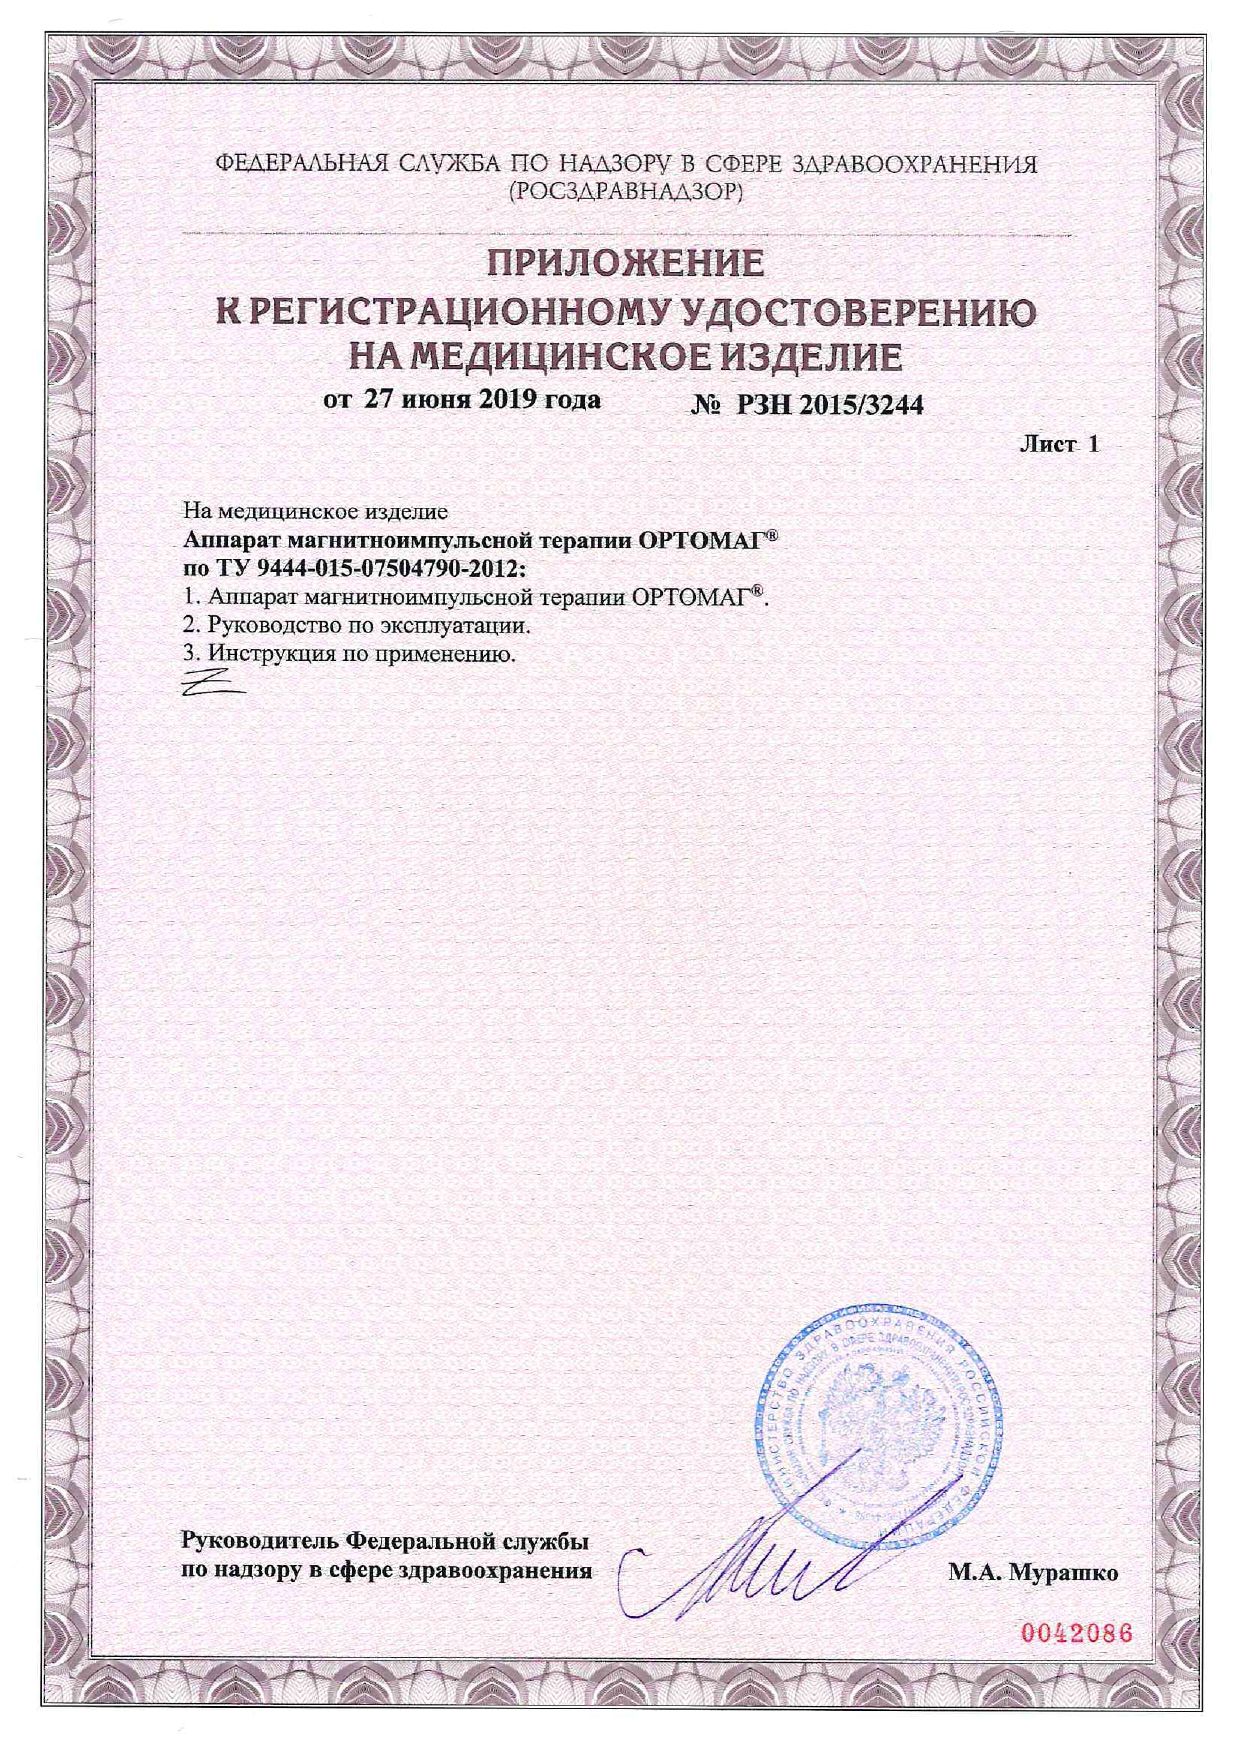 ОРТОМАГ аппарат магнитноимпульсной терапии сертификат